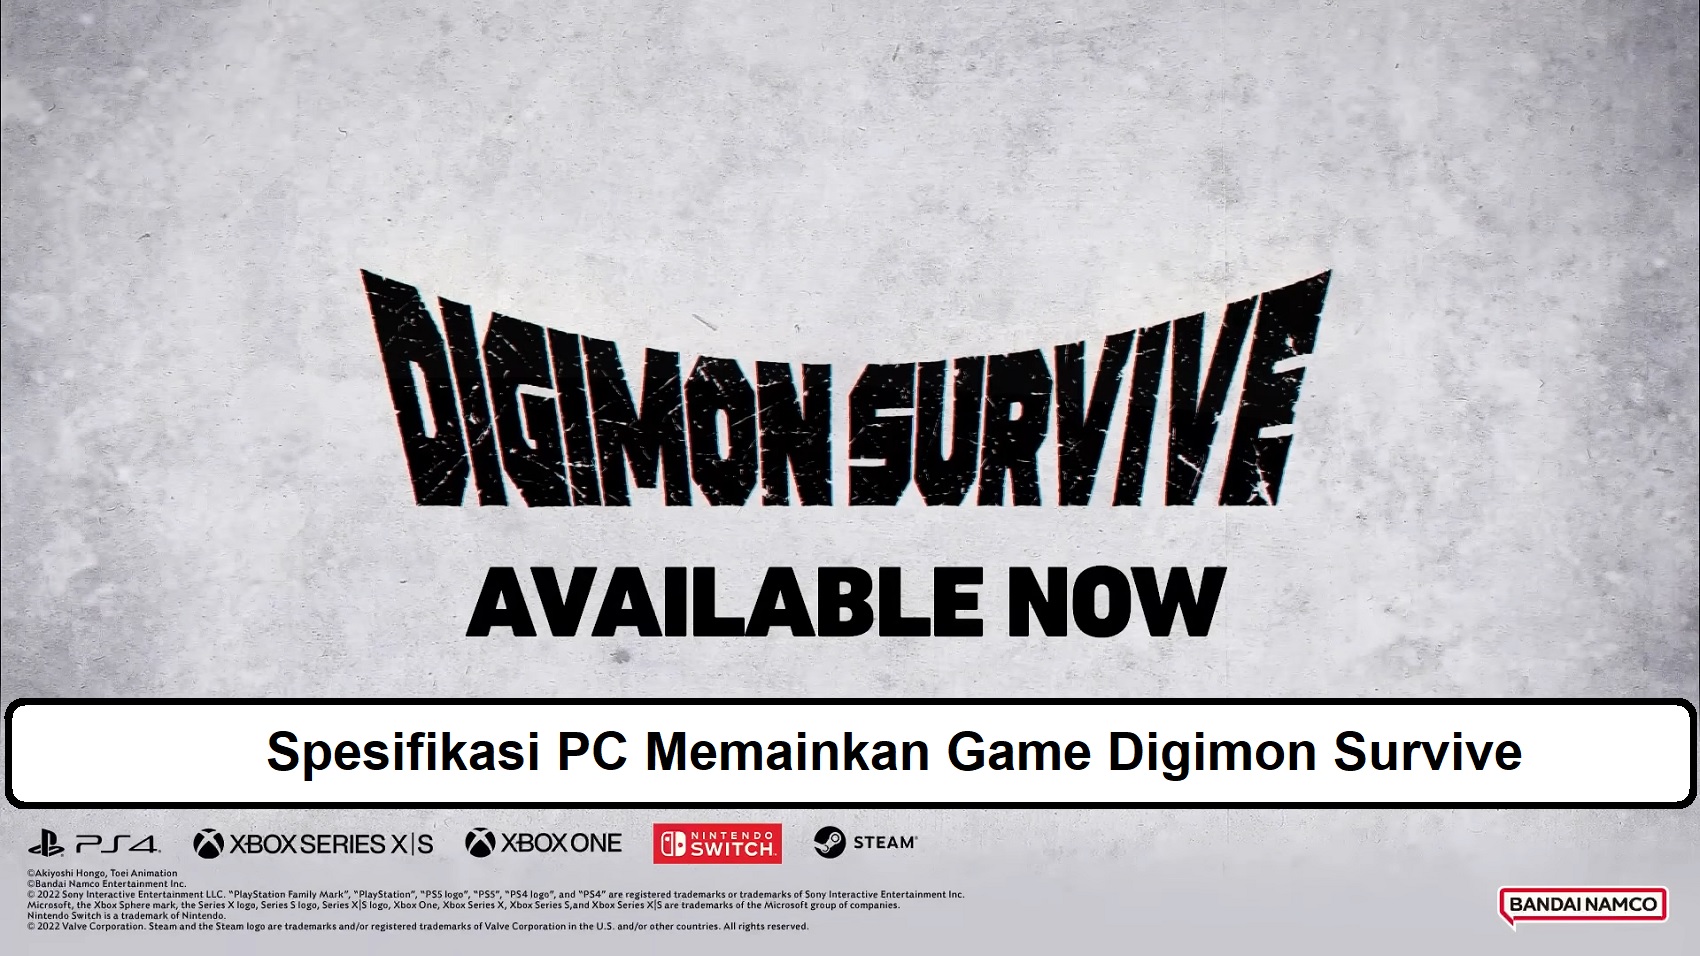 Spesifikasi PC Memainkan Game Digimon Survive